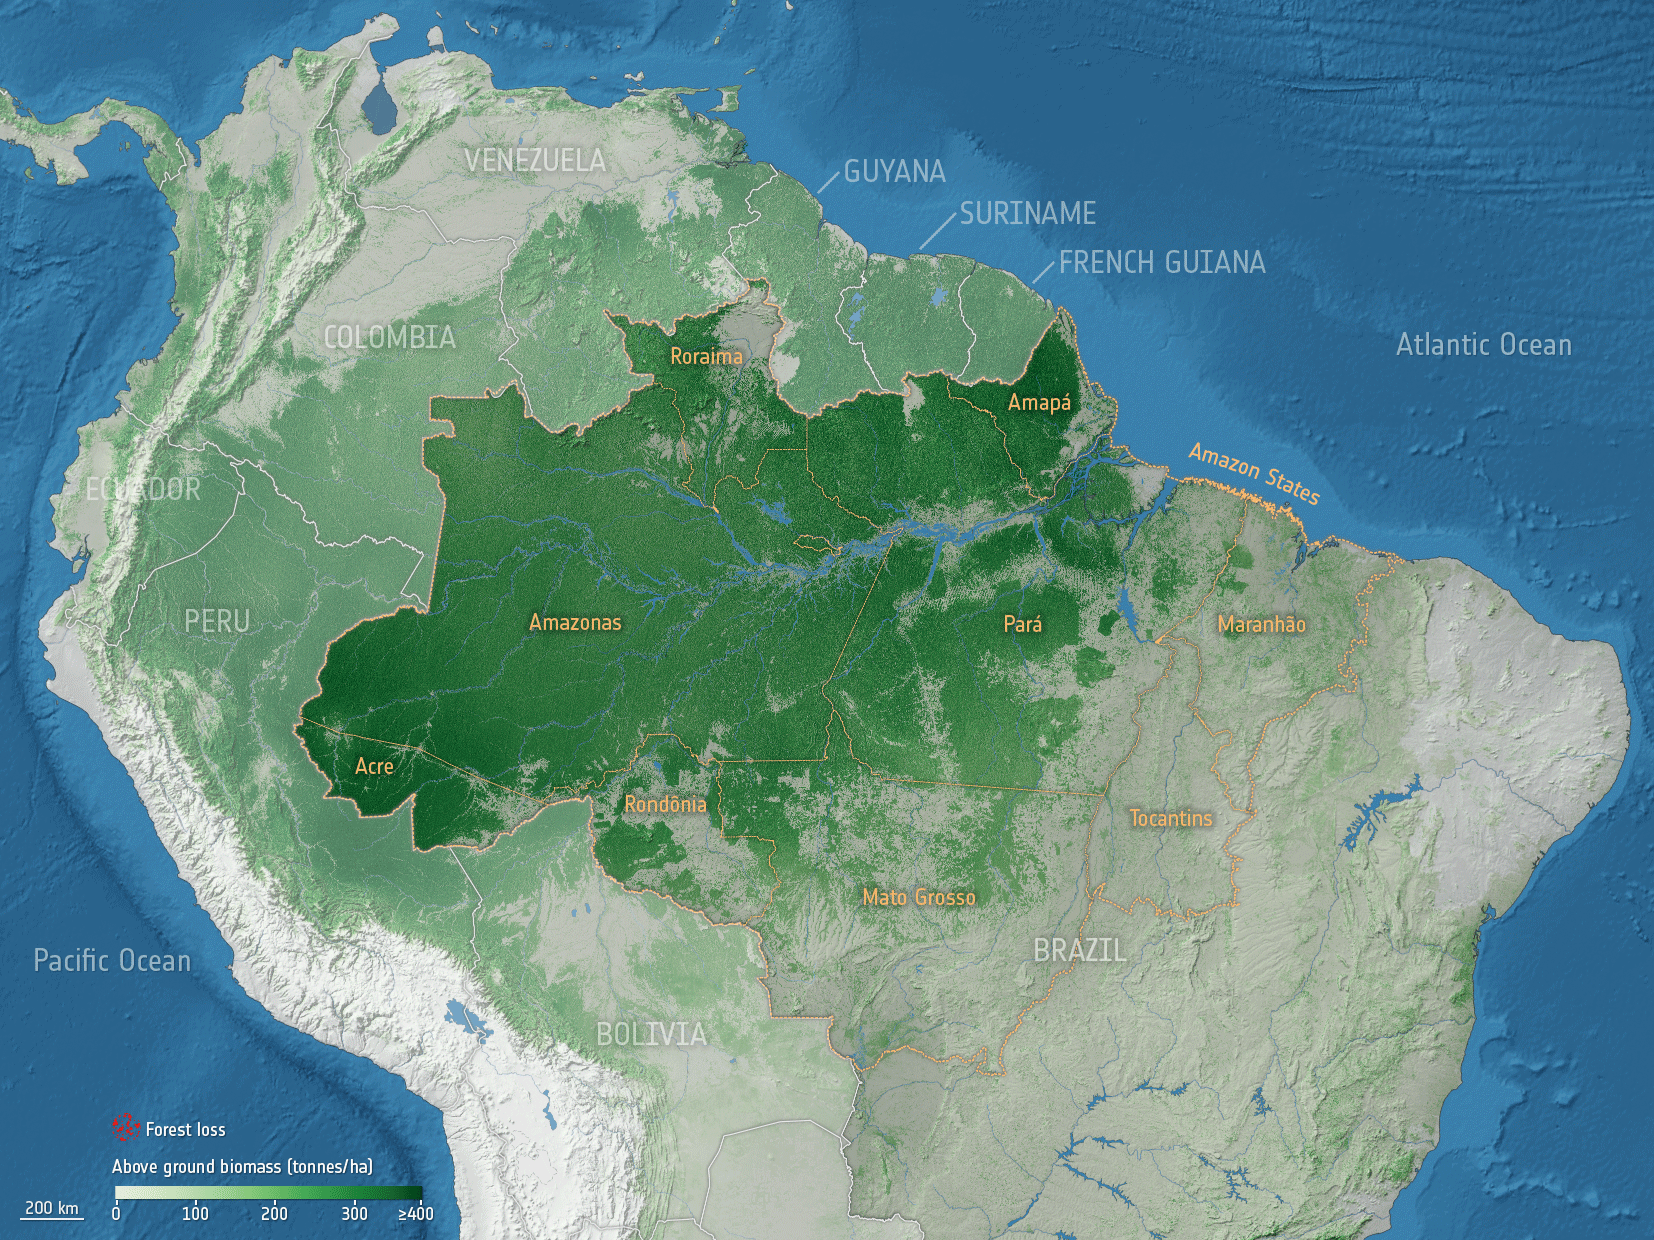 Animacja przedstawia utratę obszarów leśnych (pojawiające się obszary zaznaczone w na czerwono) w interwałach czasowych pomiędzy 2001-2020 r.